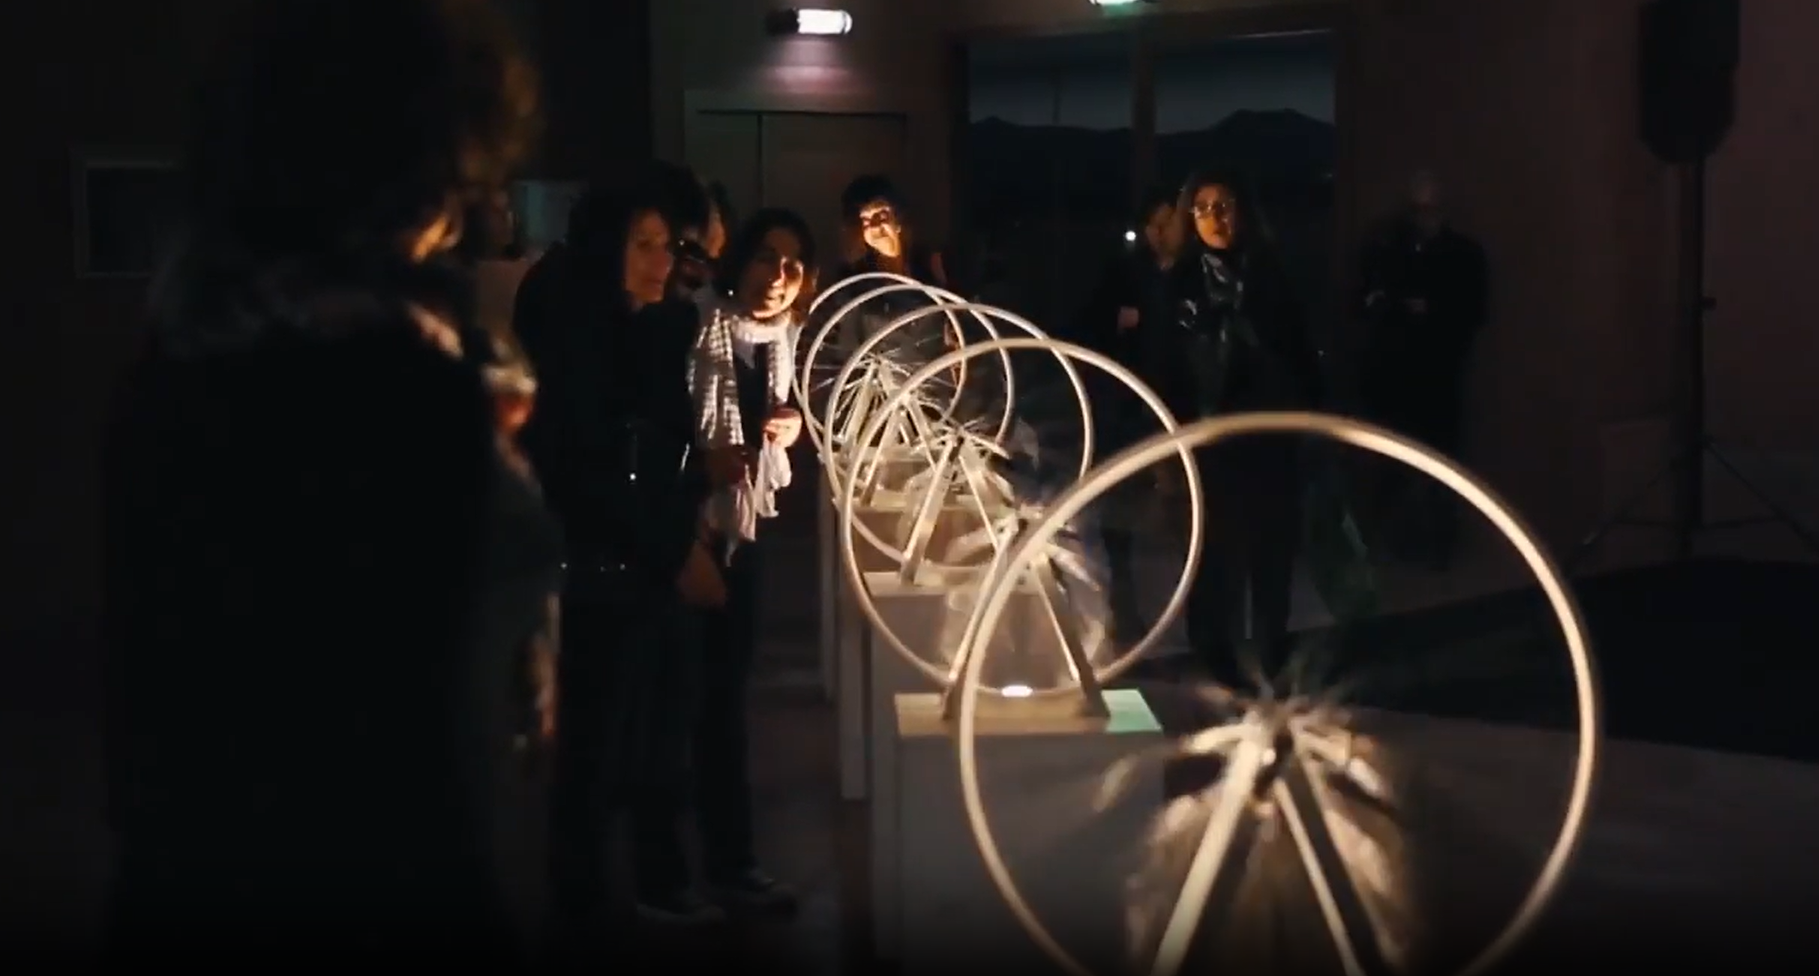 Installation participative avec des roues musicales